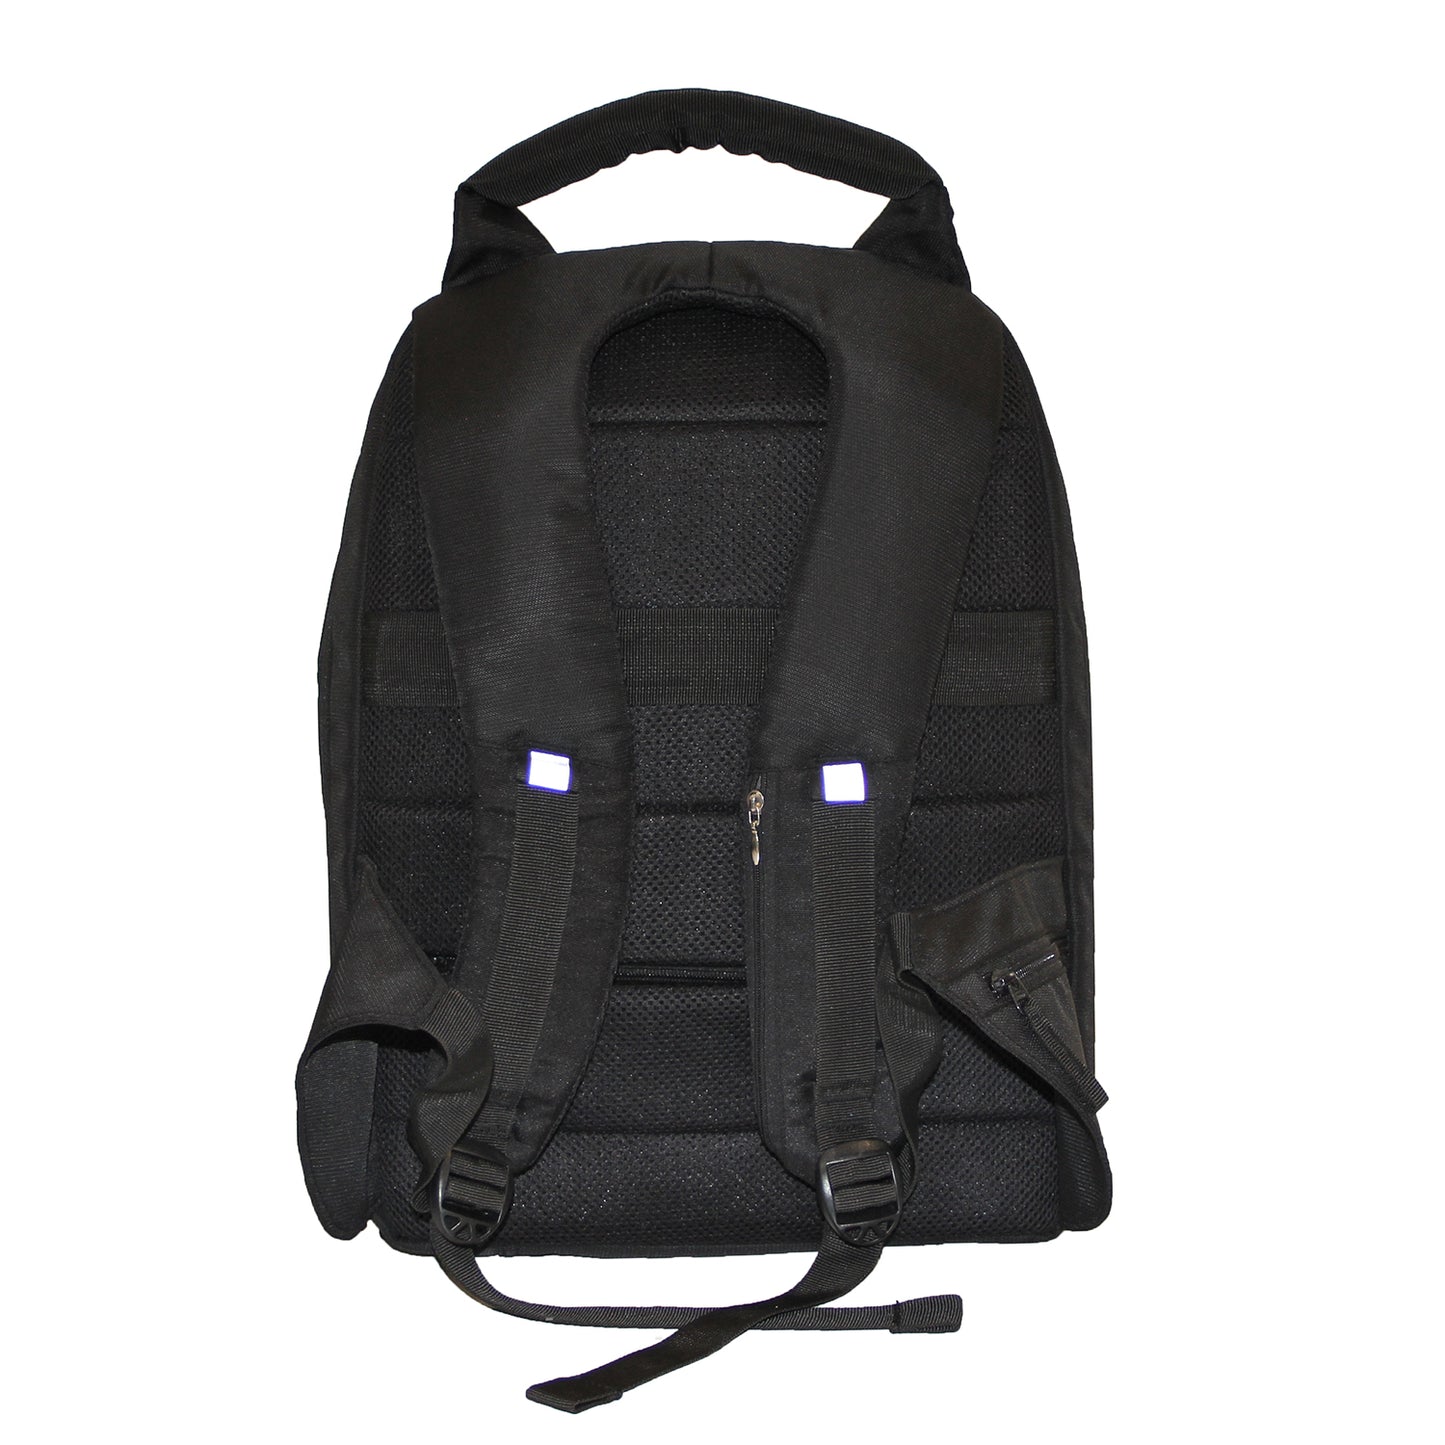 Formal Black Backpack